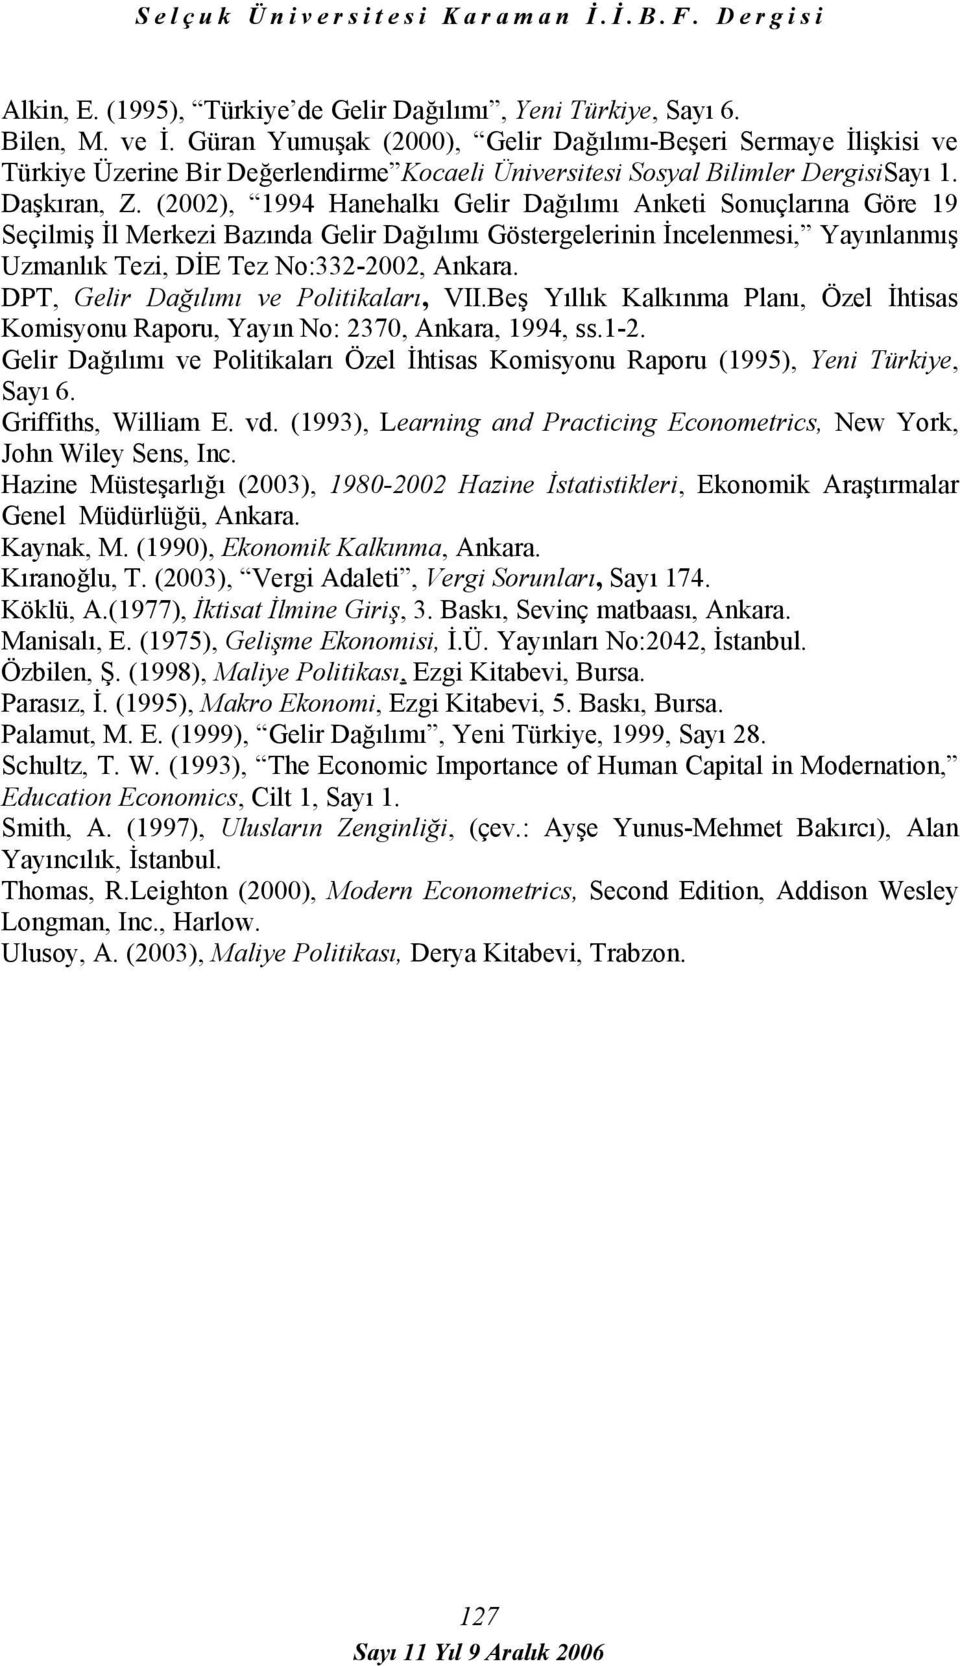 (2002), 1994 Hanehalkı Gelir Dağılımı Anketi Sonuçlarına Göre 19 Seçilmiş İl Merkezi Bazında Gelir Dağılımı Göstergelerinin İncelenmesi, Yayınlanmış Uzmanlık Tezi, DİE Tez No:332-2002, Ankara.